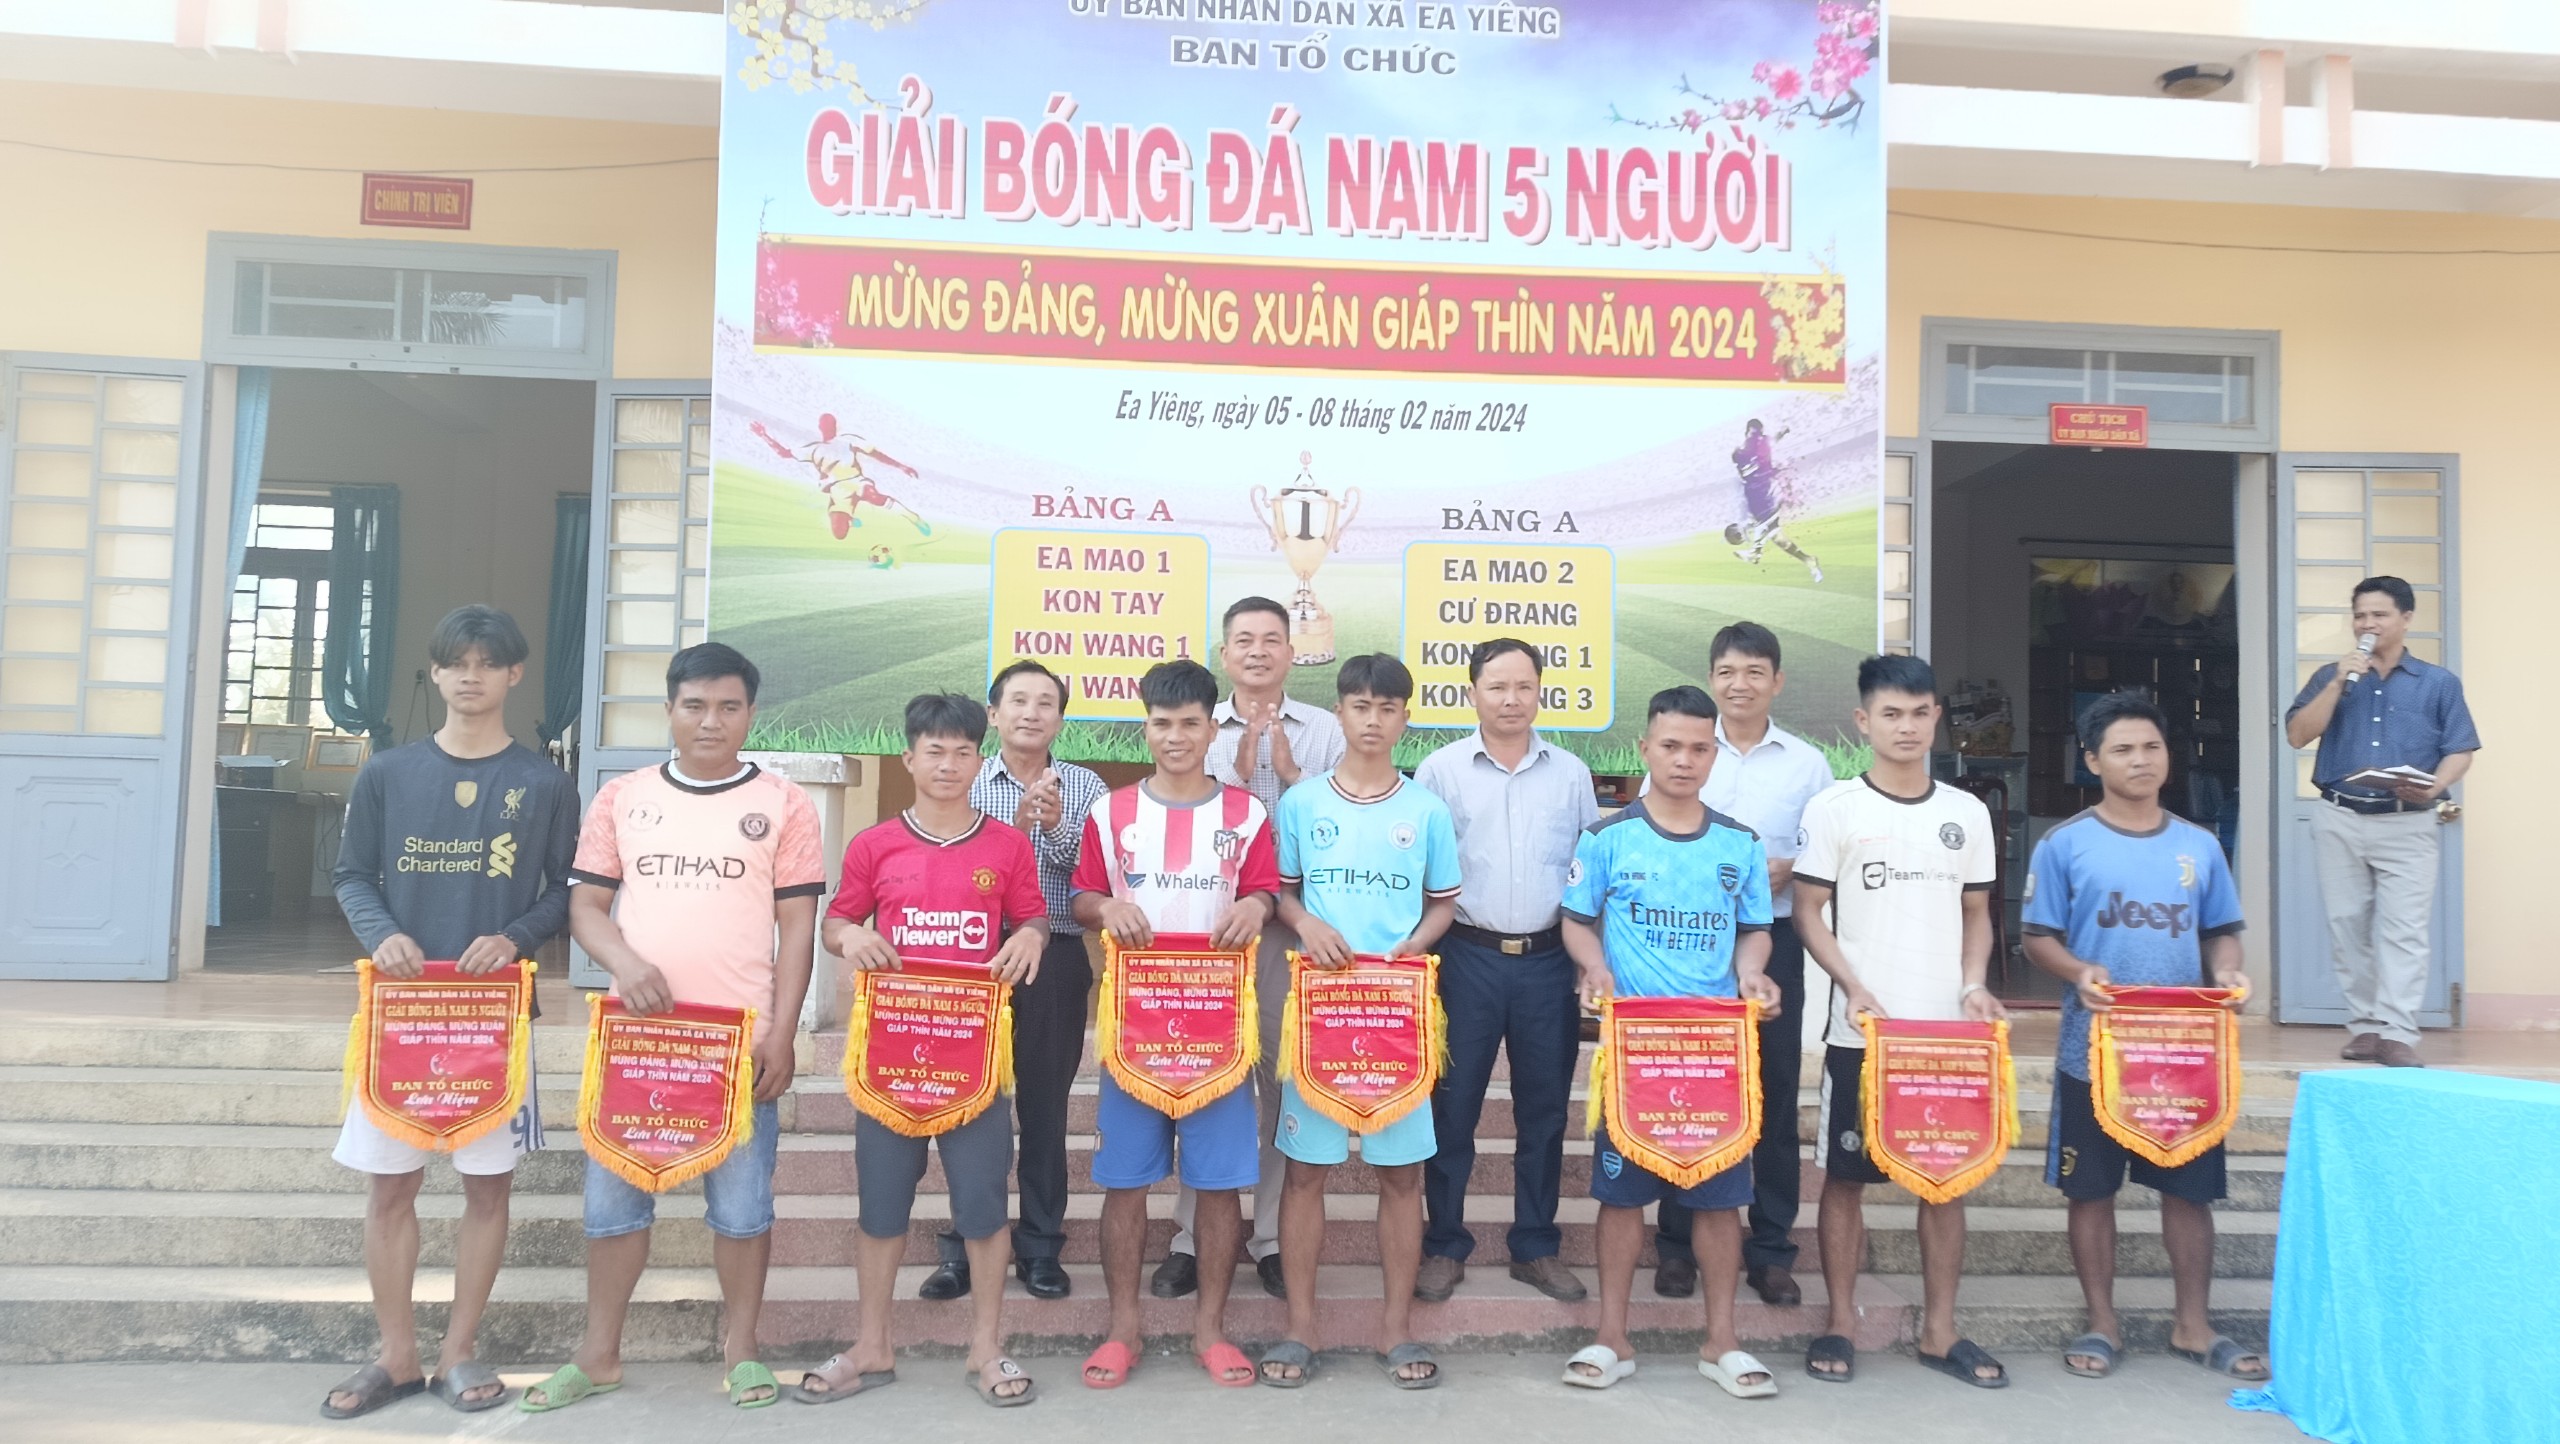 UBND xã Ea Yiêng tổ chức Giải bóng đá nam 5 người xã Ea Yiêng Mừng Đảng - Mừng Xuân Giáp Thìn năm 2024